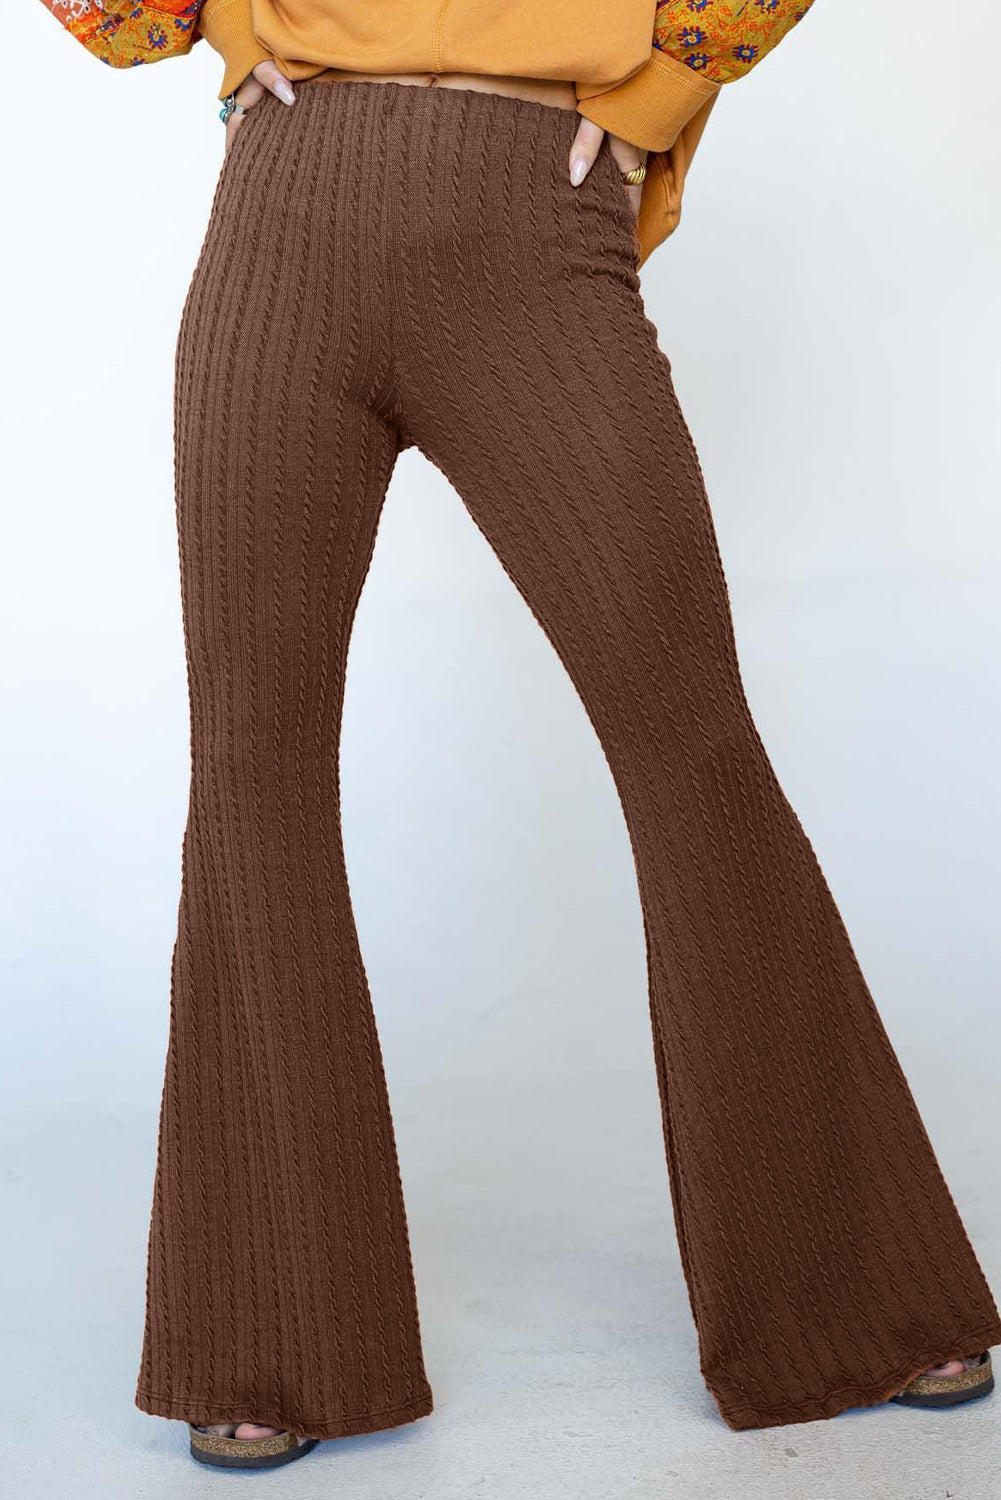 Pantalon évasé taille moyenne en tricot texturé café